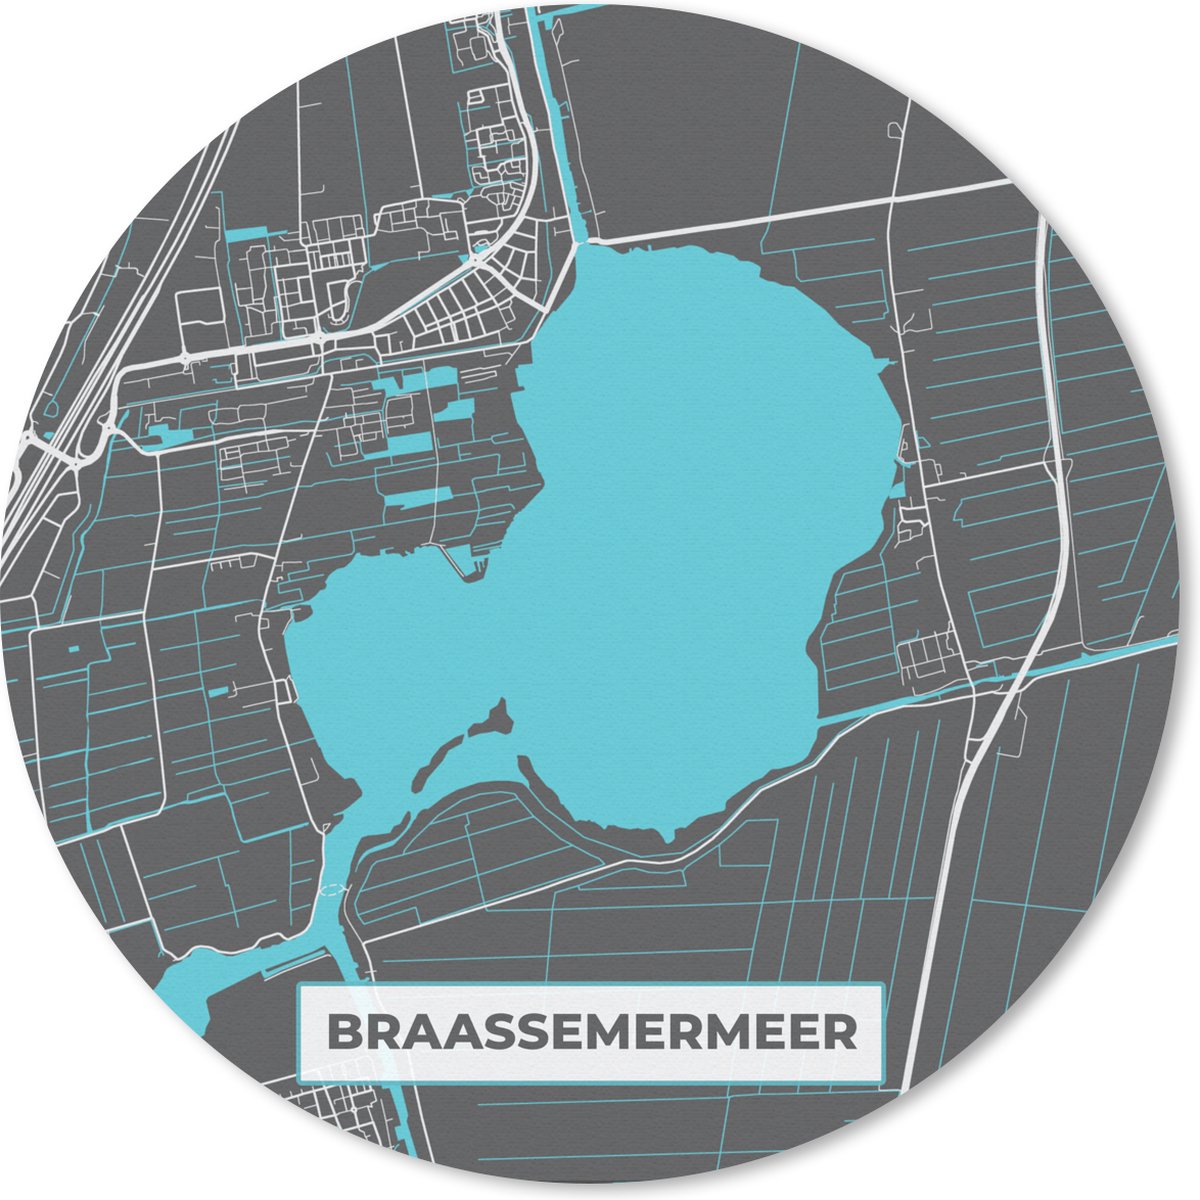 Muismat - Mousepad - Rond - Braassemermeer - Stadskaart - Plattegrond - Water - Nederland - Kaart - 50x50 cm - Ronde muismat